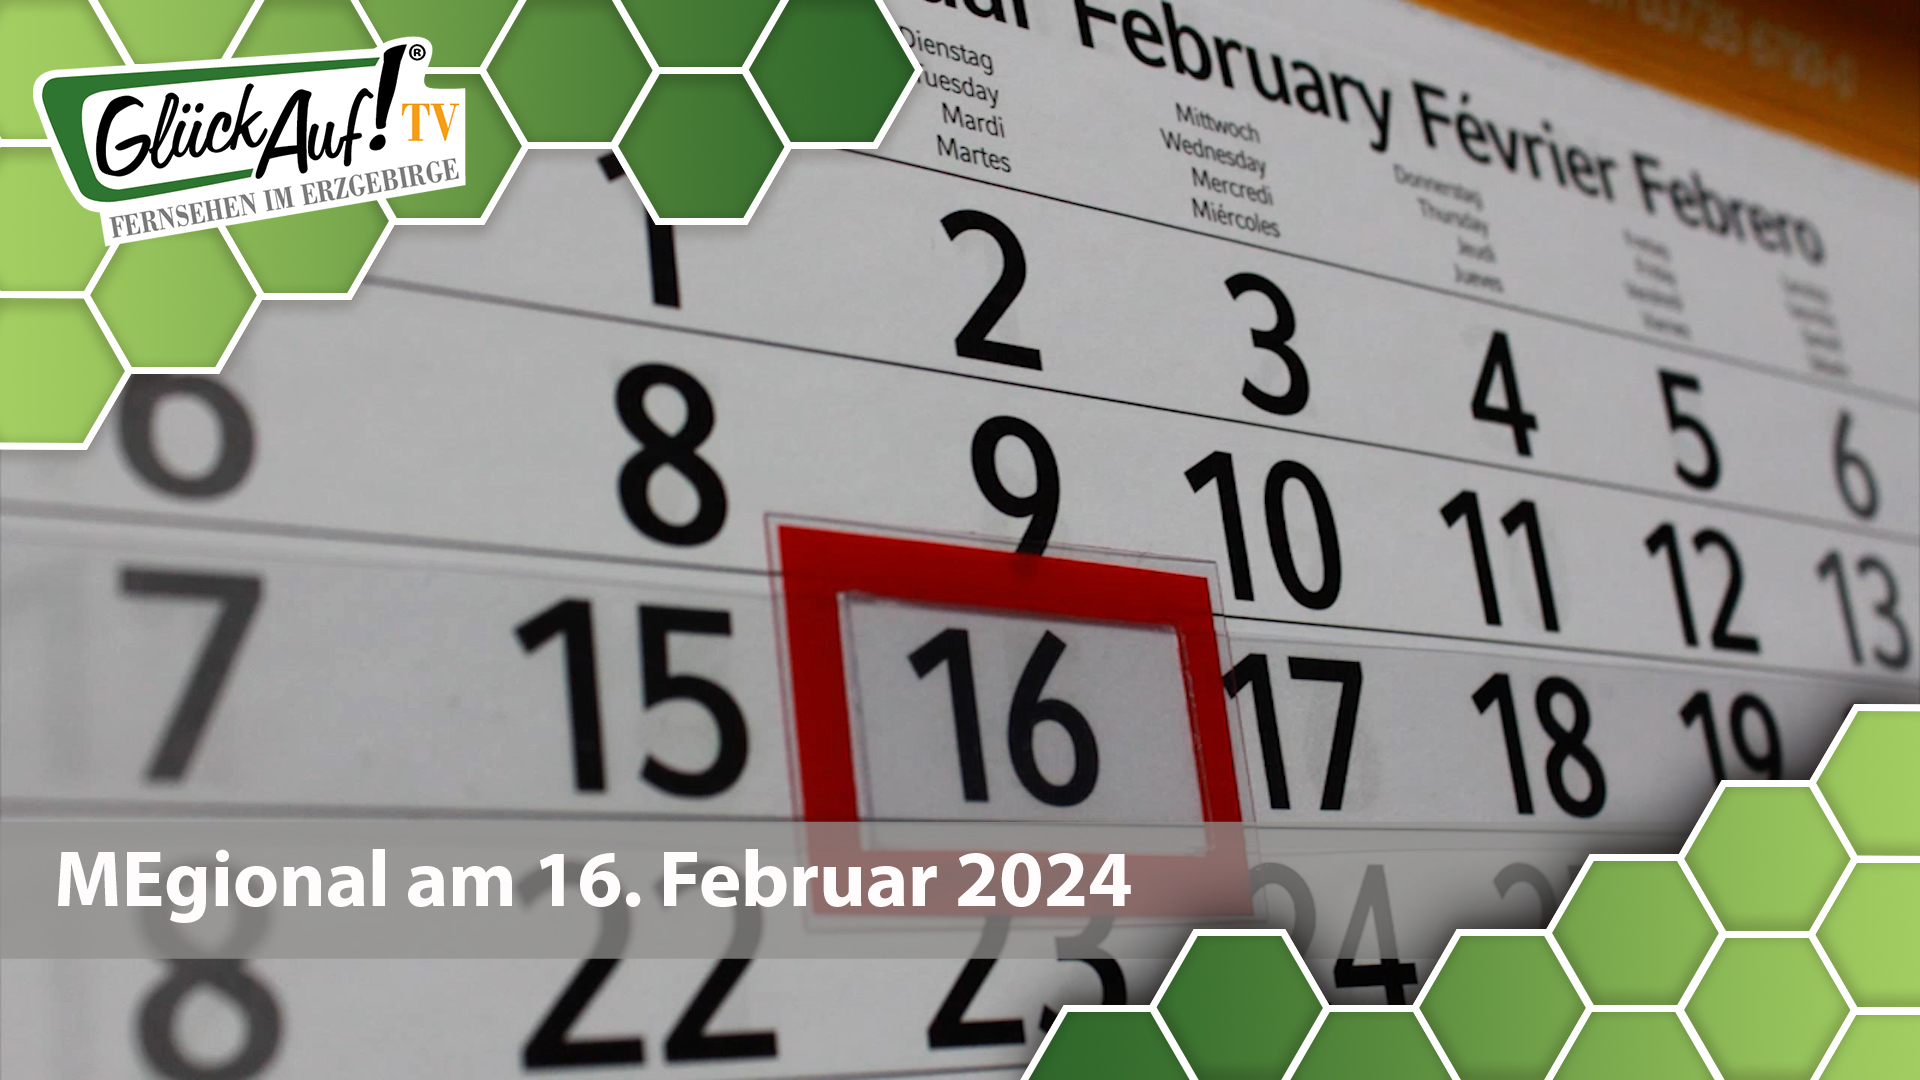 MEgional am 16. Februar 2024 mit Fördergeld für Bürgerprojekte